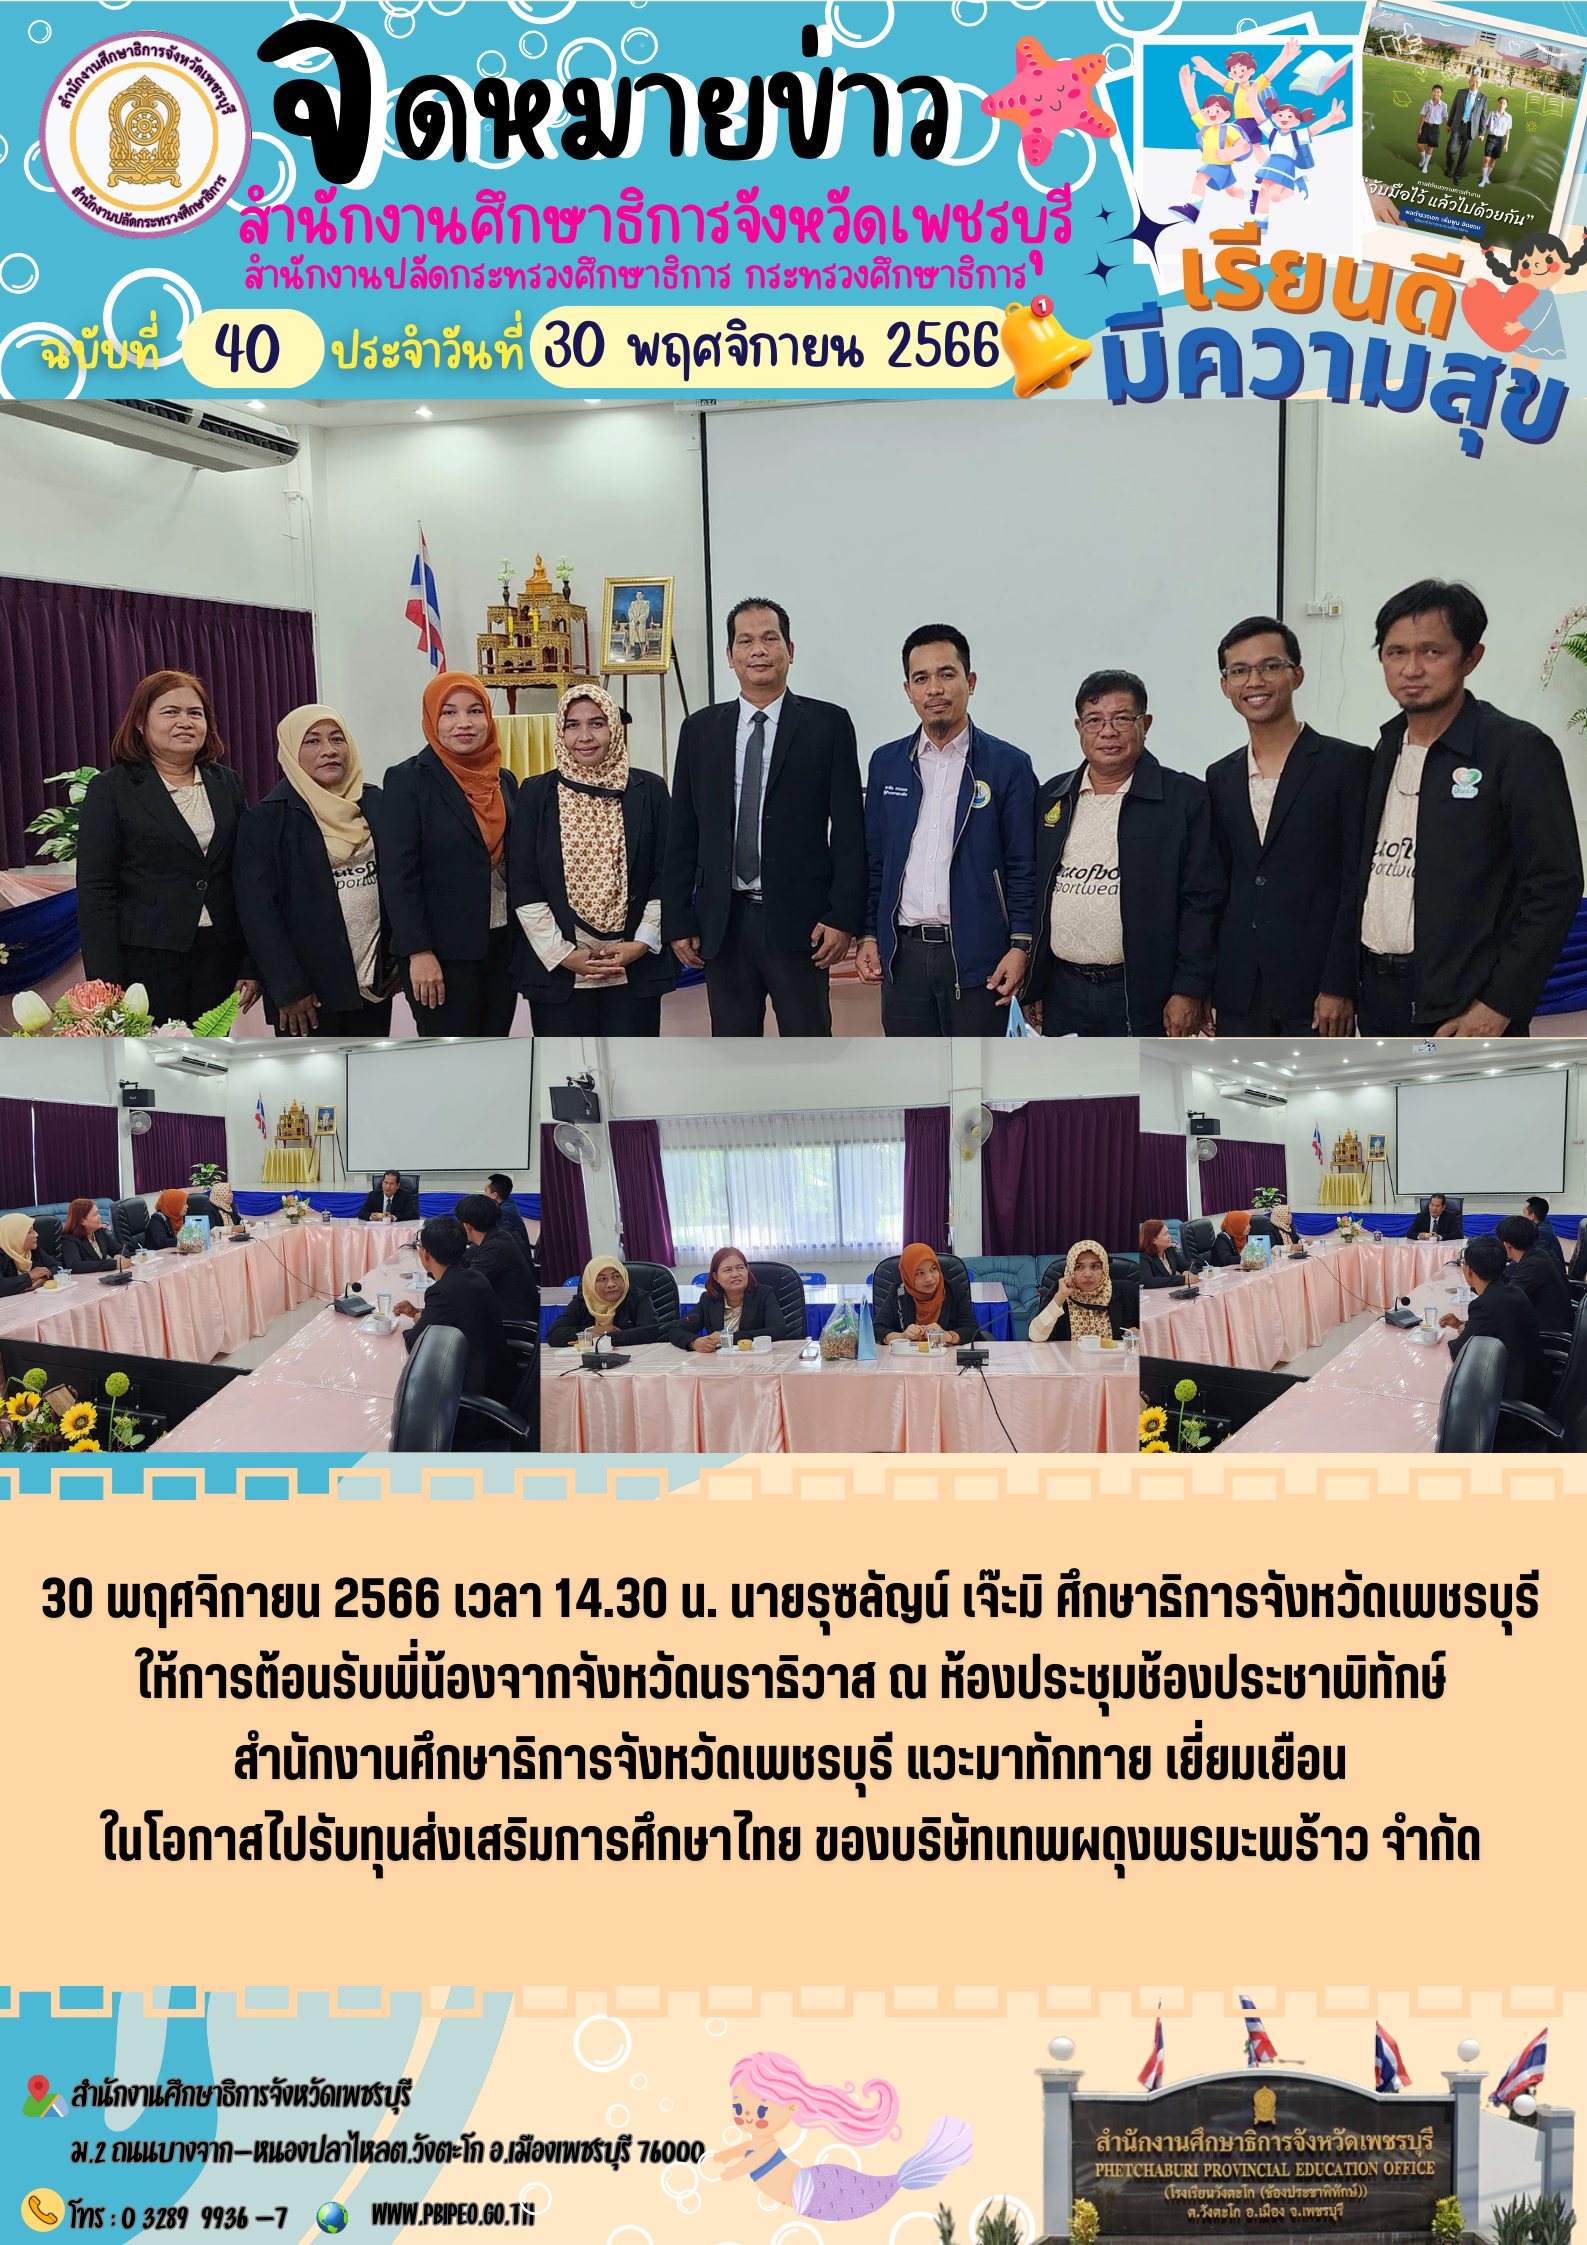 ศึกษาธิการจังหวัดเพชรบุรี ให้การต้อนรับพี่น้องจากจังหวัดนราธิวาส  แวะมาทักทาย เยี่ยมเยือน ในโอกาสไปรับทุนส่งเสริมการศึกษาไทย ของบริษัทเทพผดุงพรมะพร้าว จำกัด